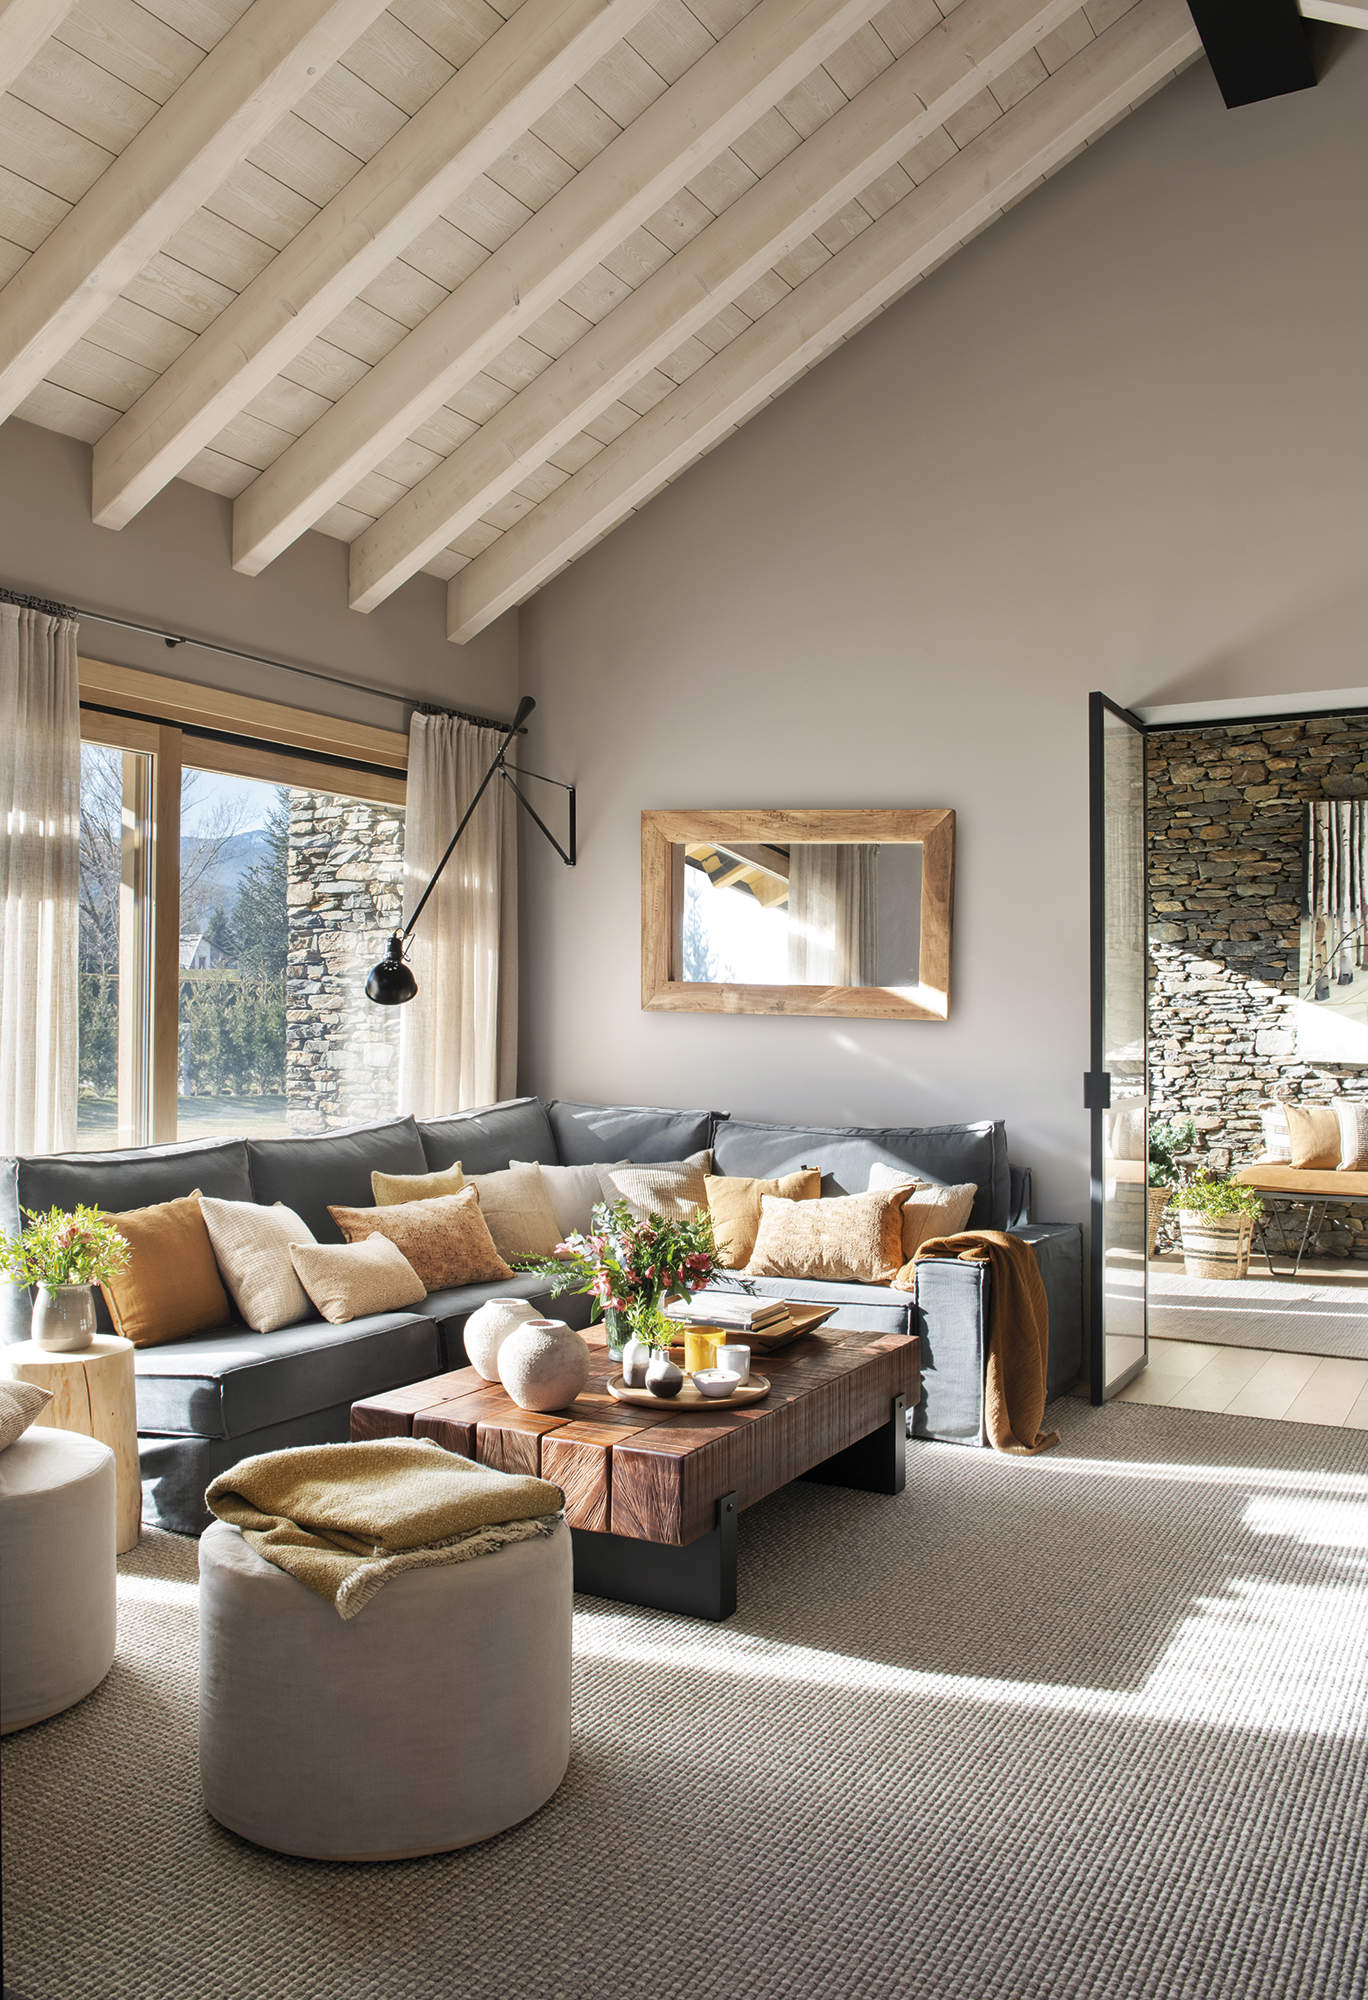 Salón con techo alto con vigas de madera, sofá gris esquinero con cojines beige y naranja, mesa de centro de madera rústica,  alfombra gris.